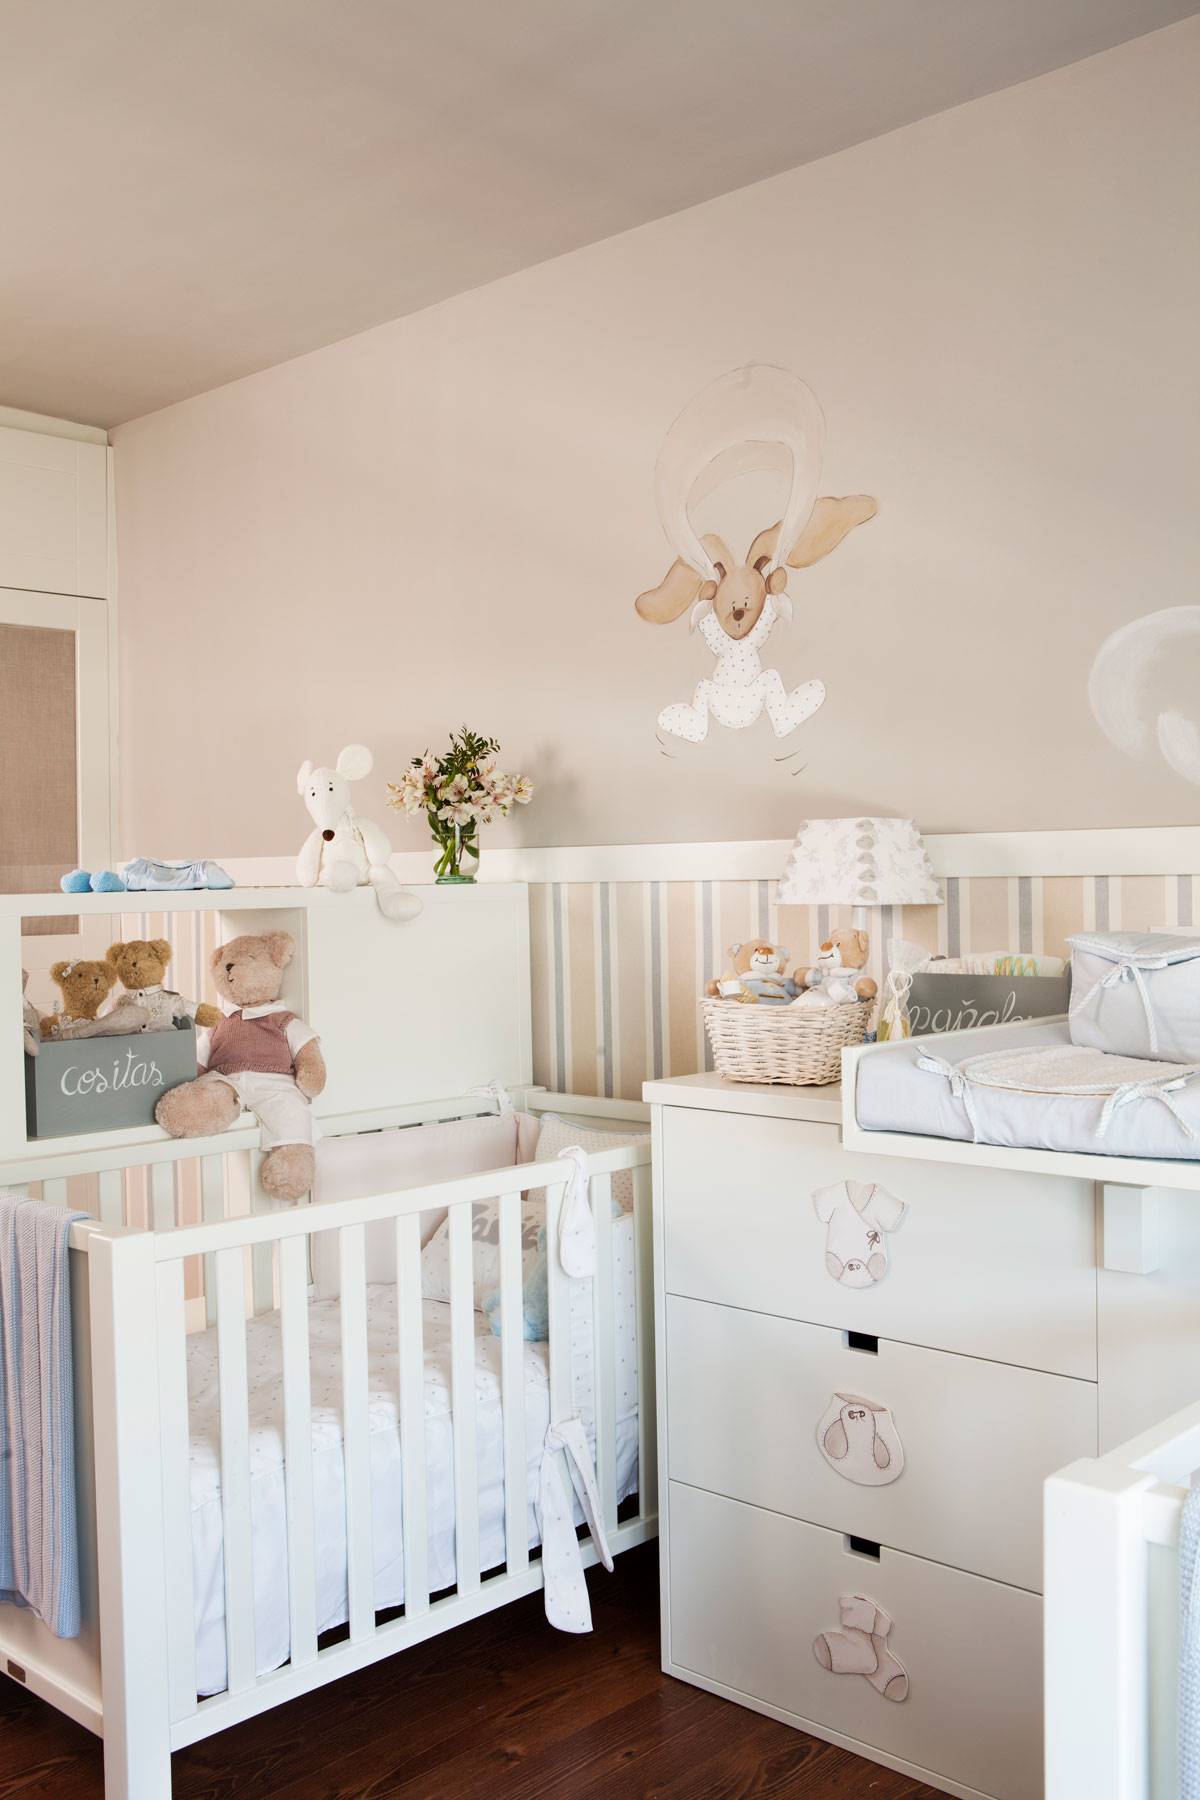 sed Notable reloj 15 ideas de decoración para la habitación del bebé